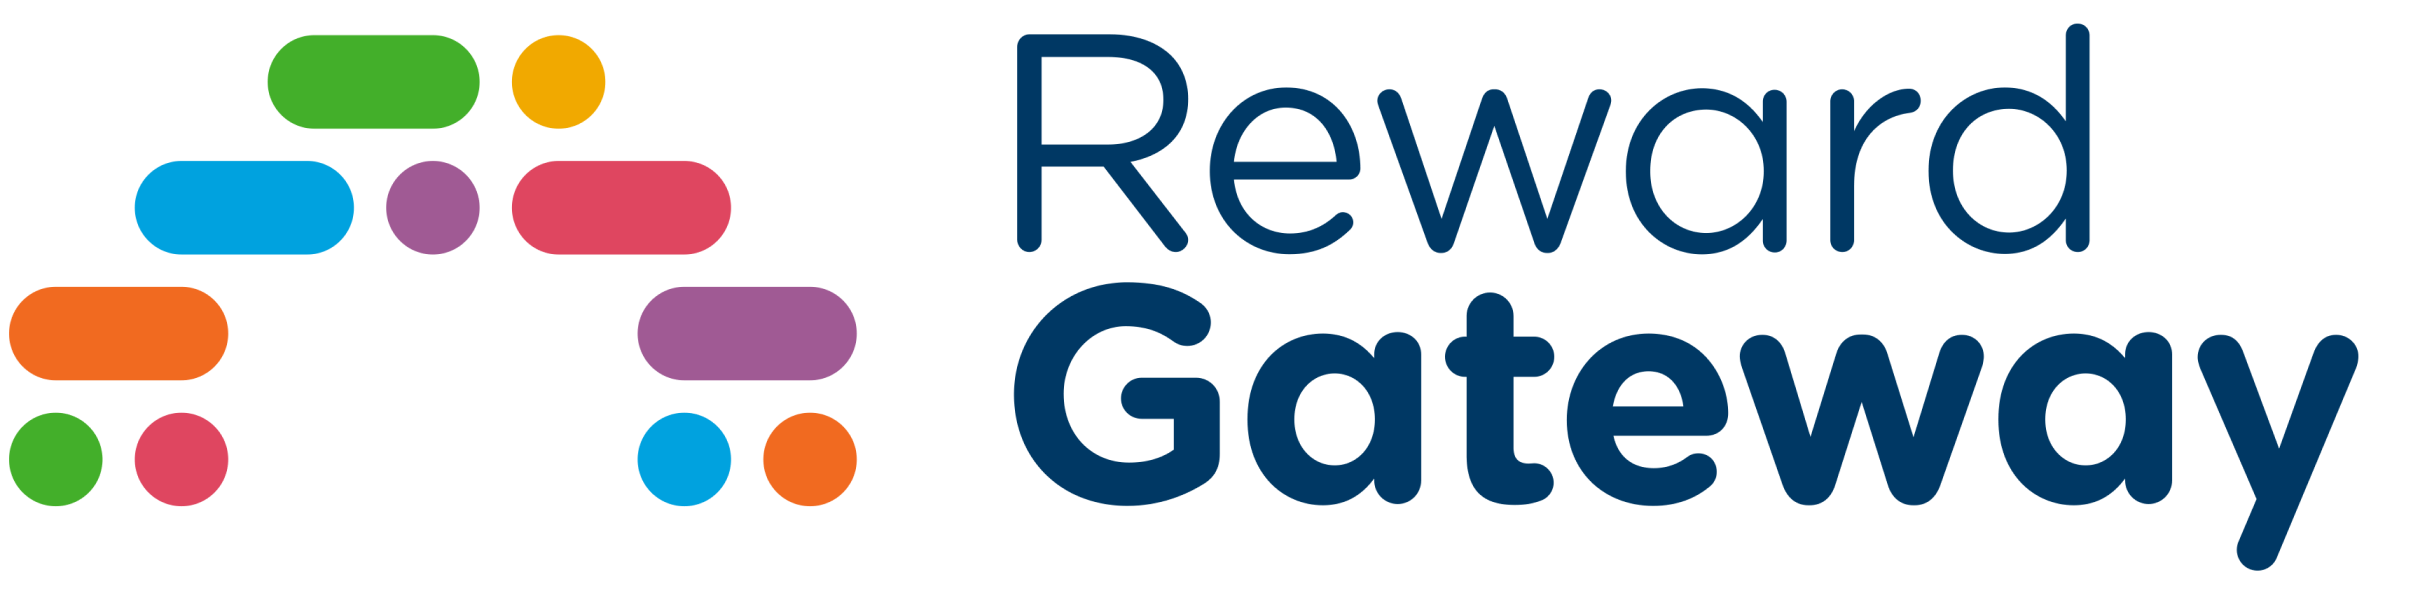 Reward gateway logo